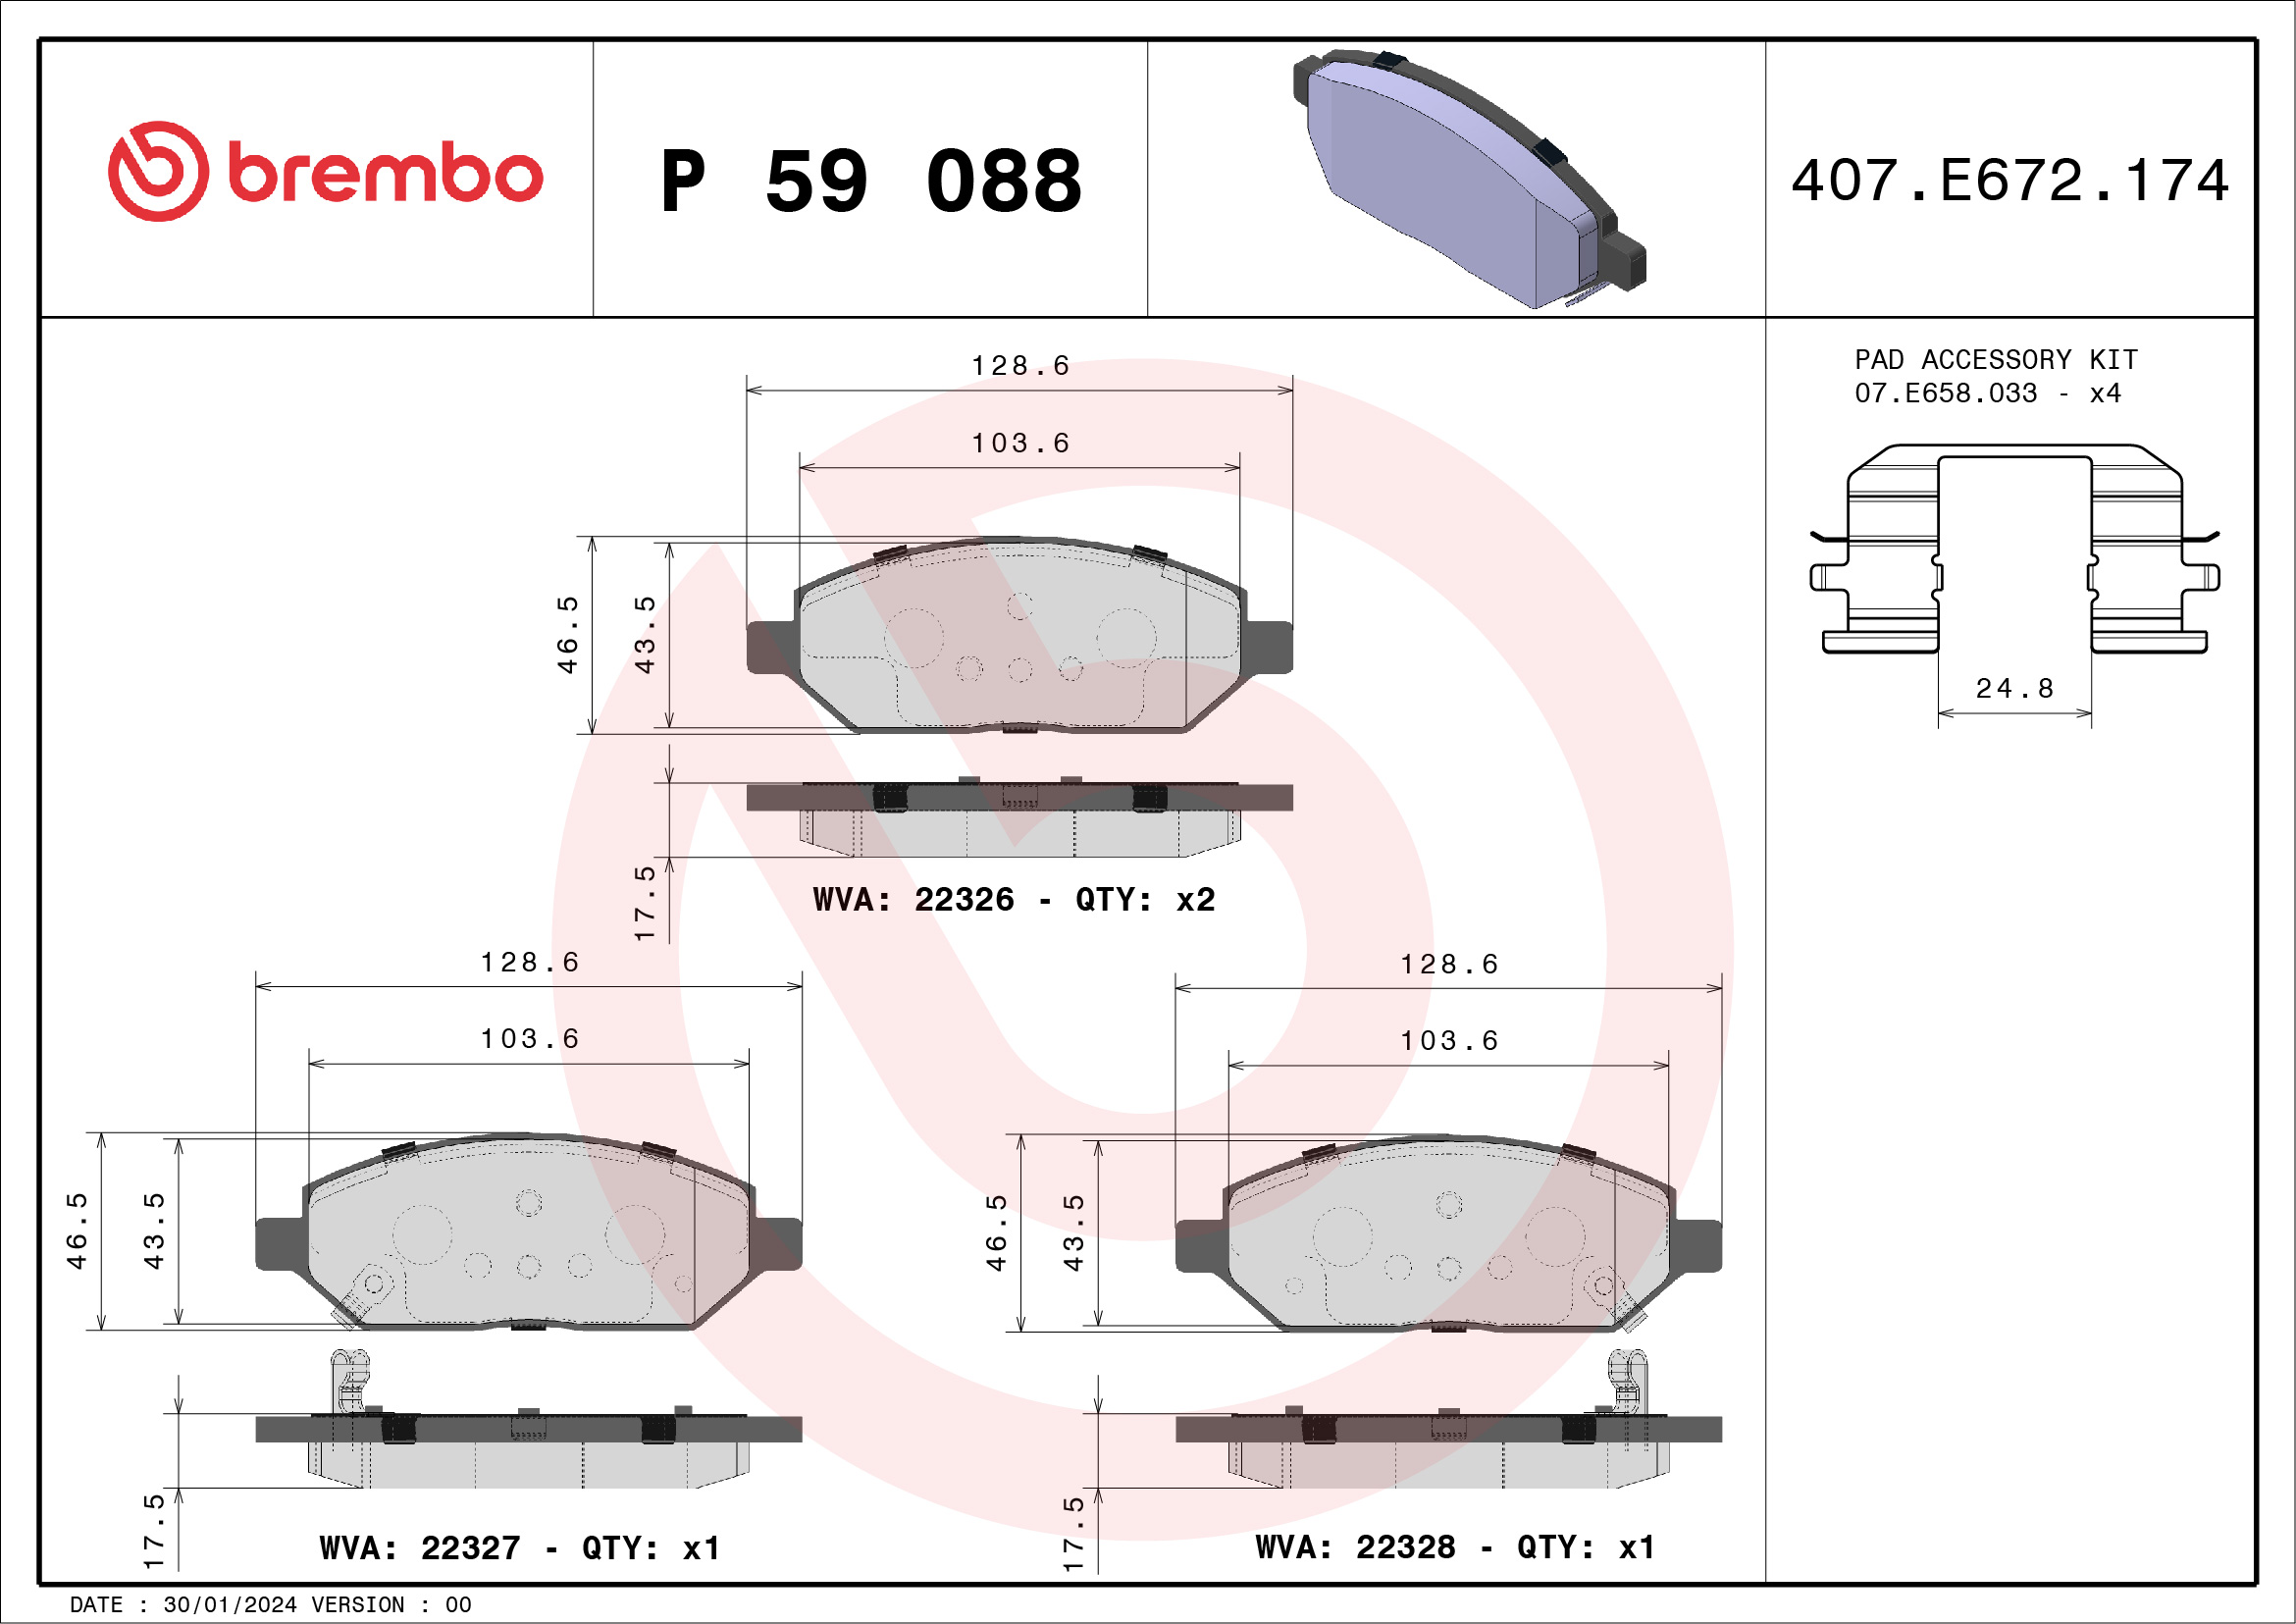 BREMBO P 59 088 Kit...